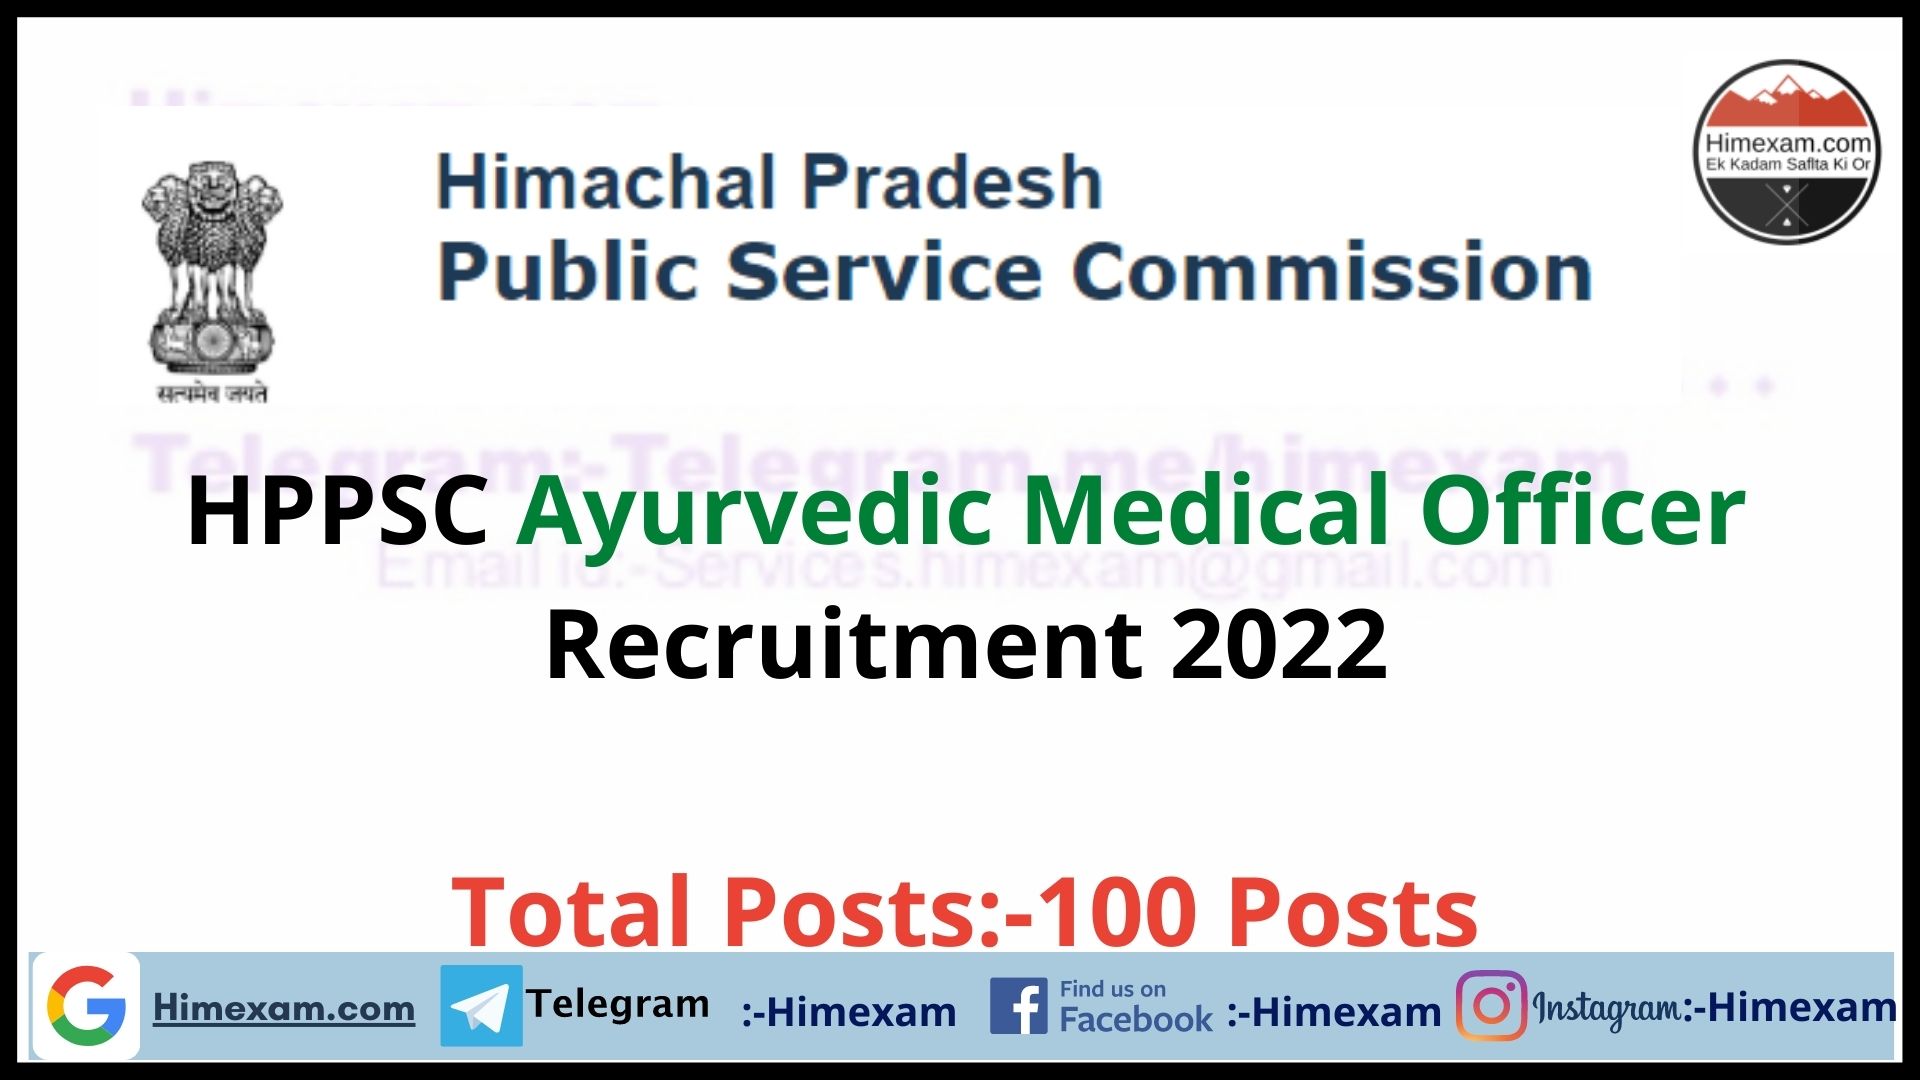 HPPSC Ayurvedic Medical Officer Recruitment 2022